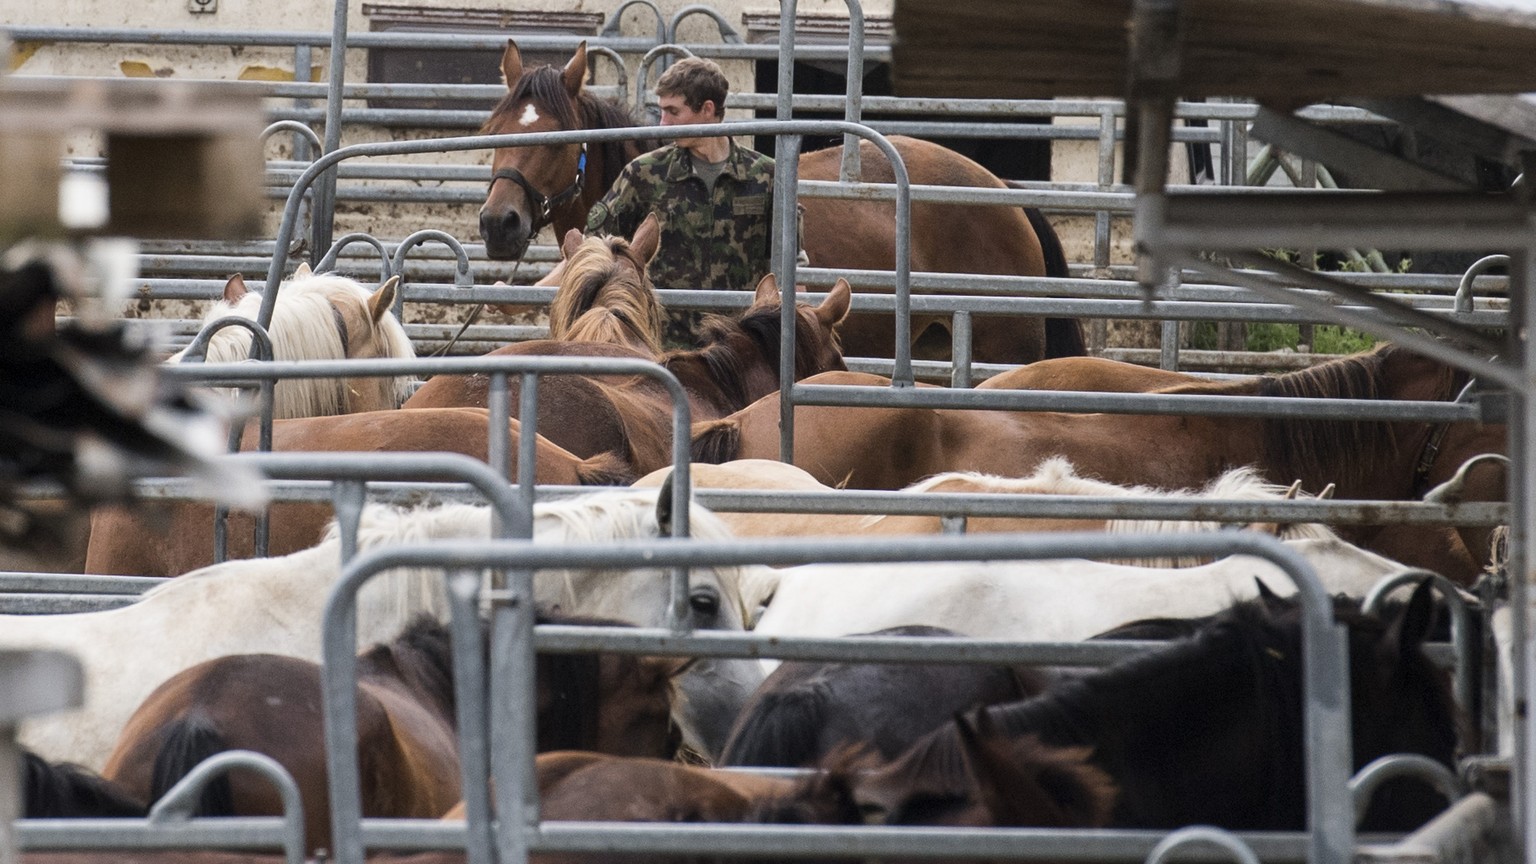 Das Militaer sichert die Pferde vom Hof von Ulrich K., der unter dem Verdacht der Quaelerei von Pferden steht, aufgenommen am Dienstag, 8. August 2017, in Hefenhofen. (KEYSTONE/Ennio Leanza)